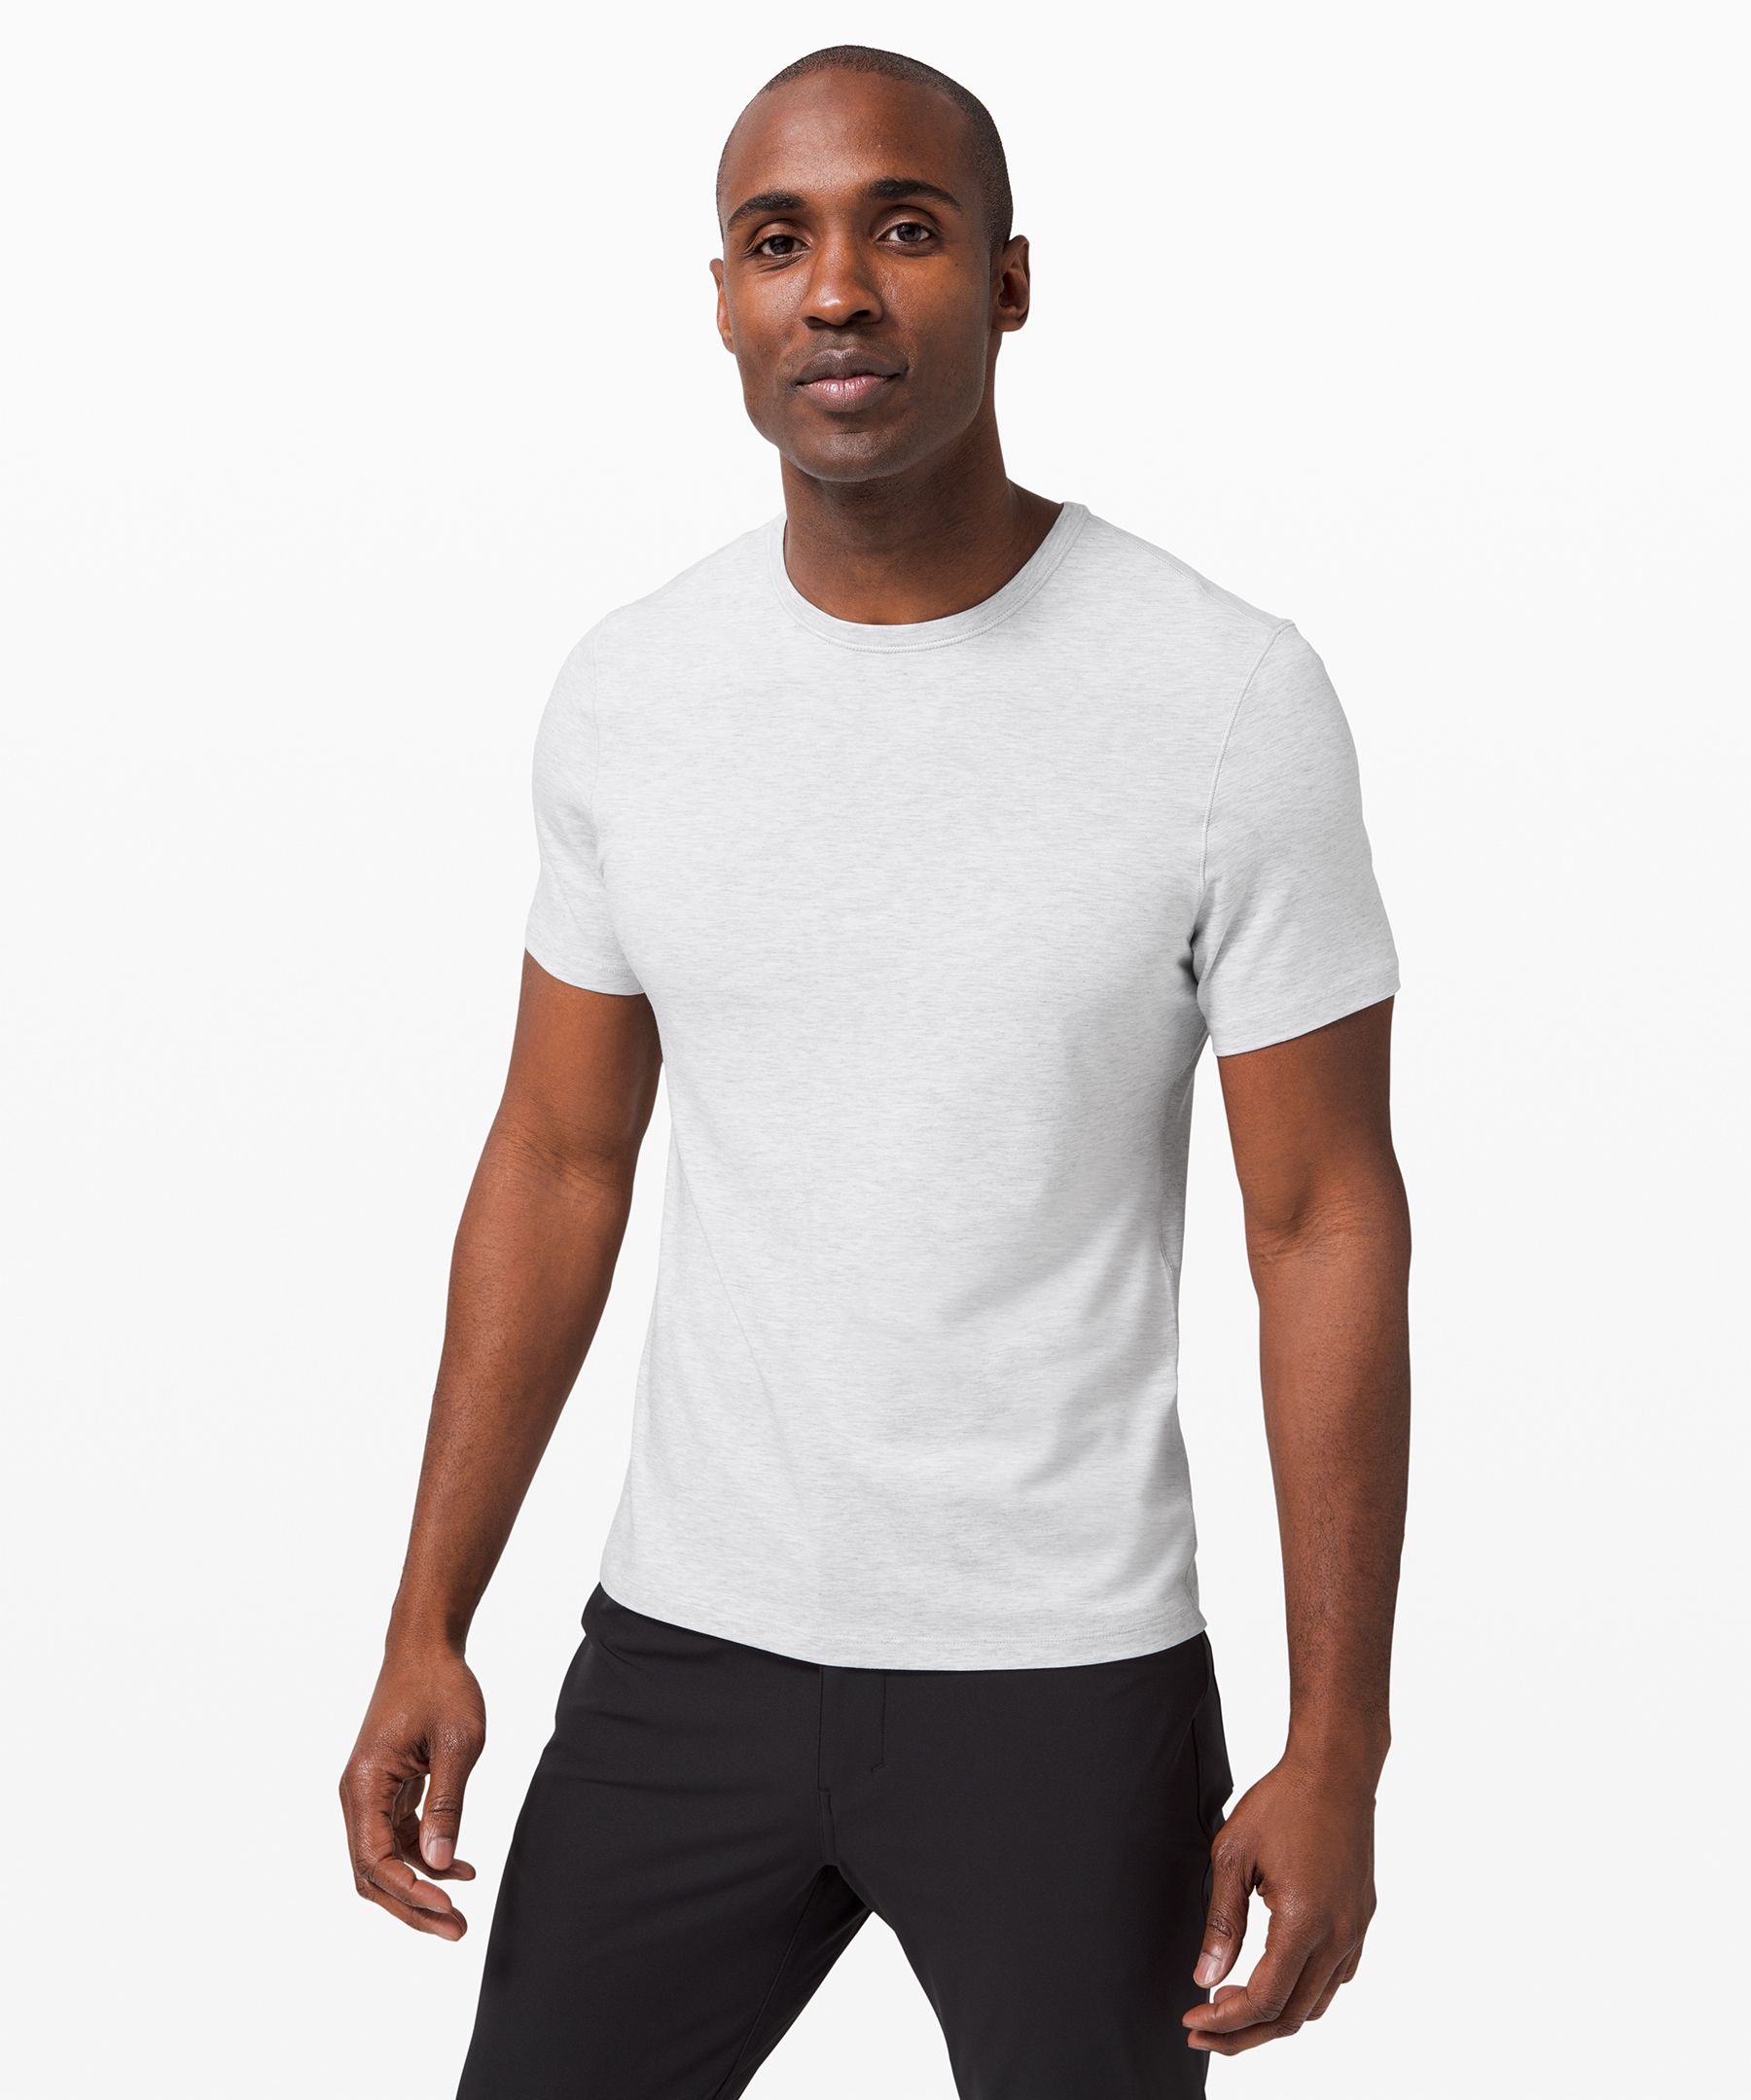 aan de andere kant, Hoofd Van streek 5 Year Basic T-Shirt *5 Pack | Men's Short Sleeve Shirts & Tee's | lululemon